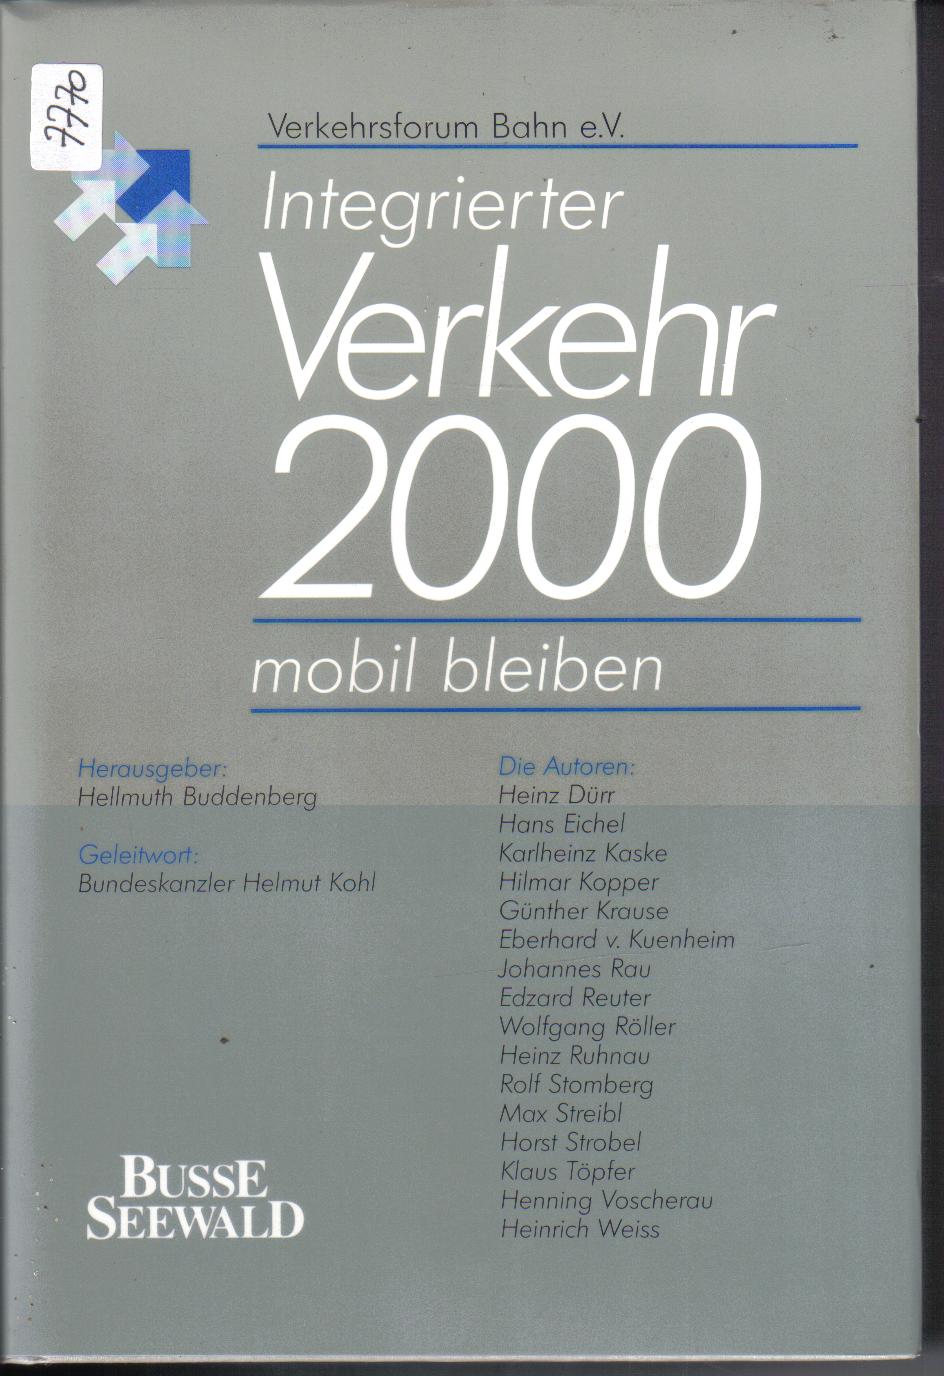 Intergrierter Verkehr 2000Verkehrsforum Bahn e.V.